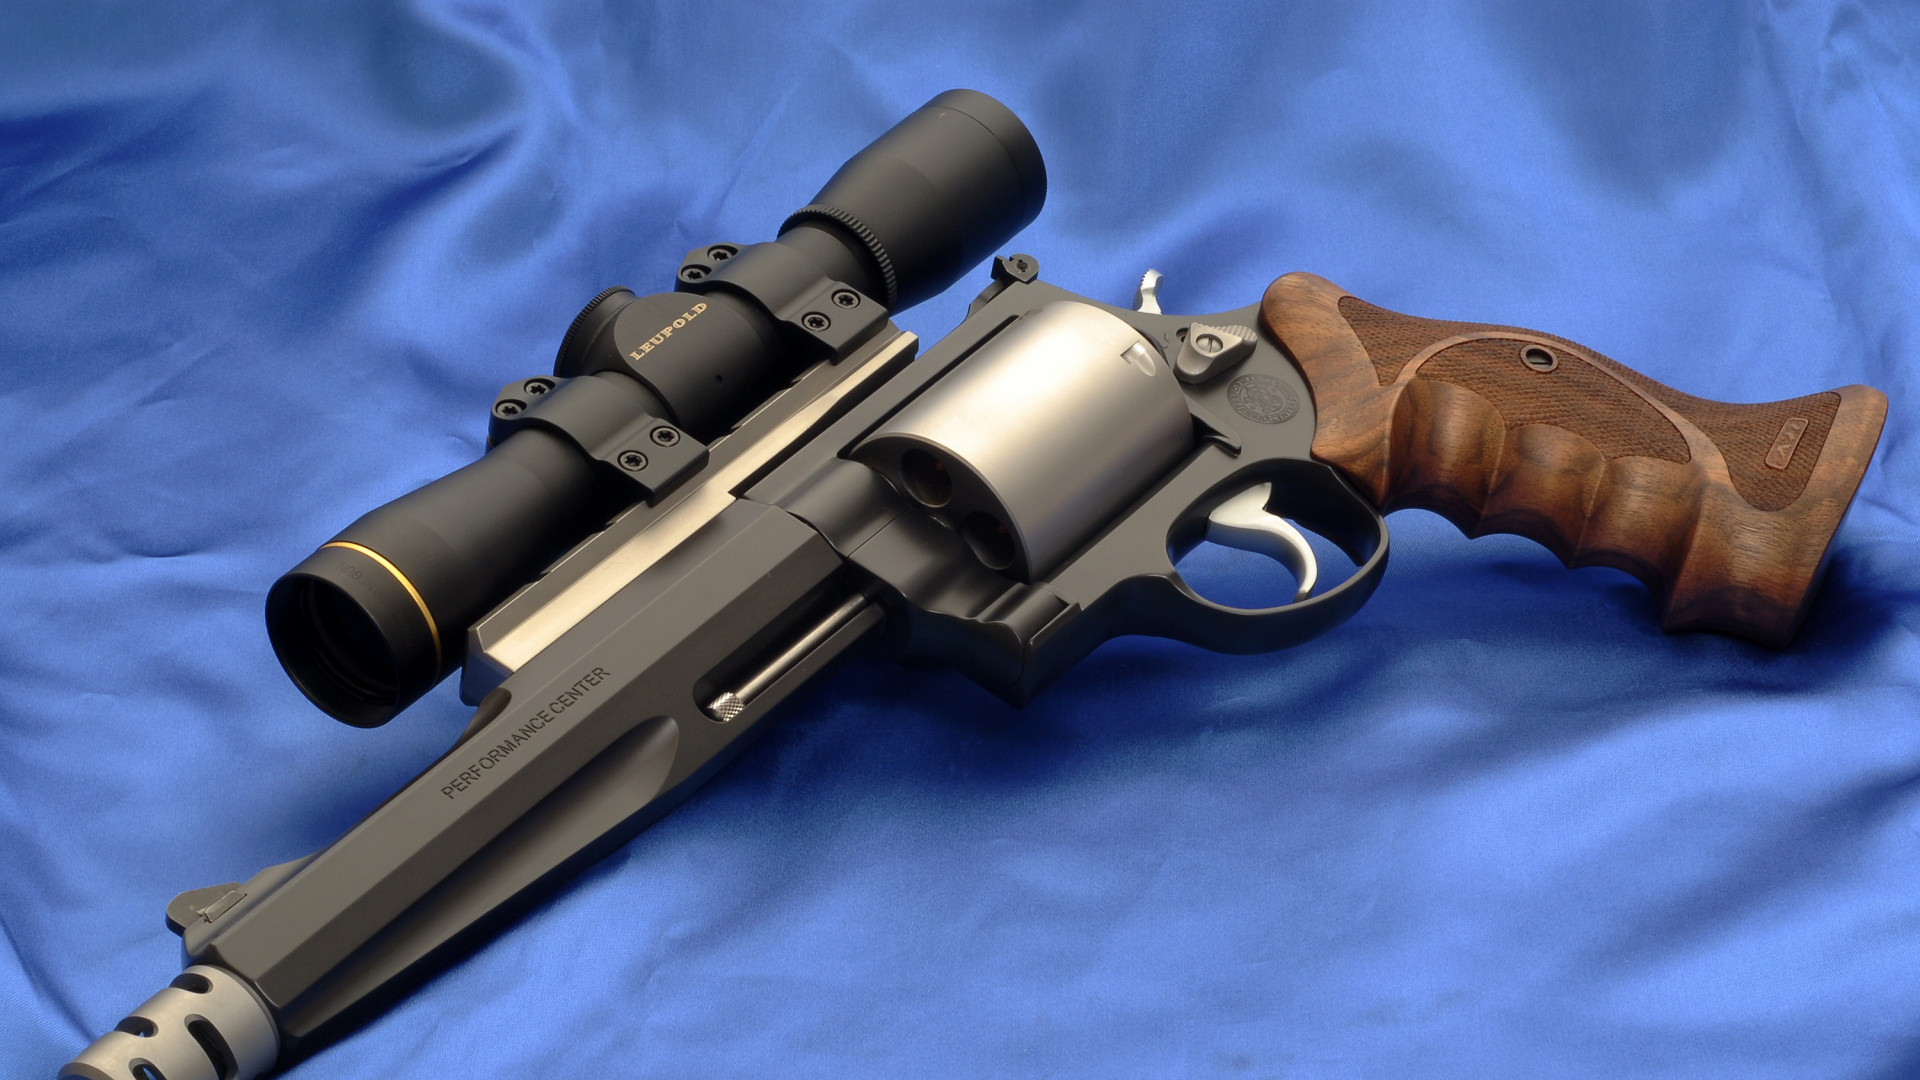 Handfeuerwaffe, Feuerwaffe, Trigger, Revolver, Luftgewehr. Wallpaper in 1920x1080 Resolution